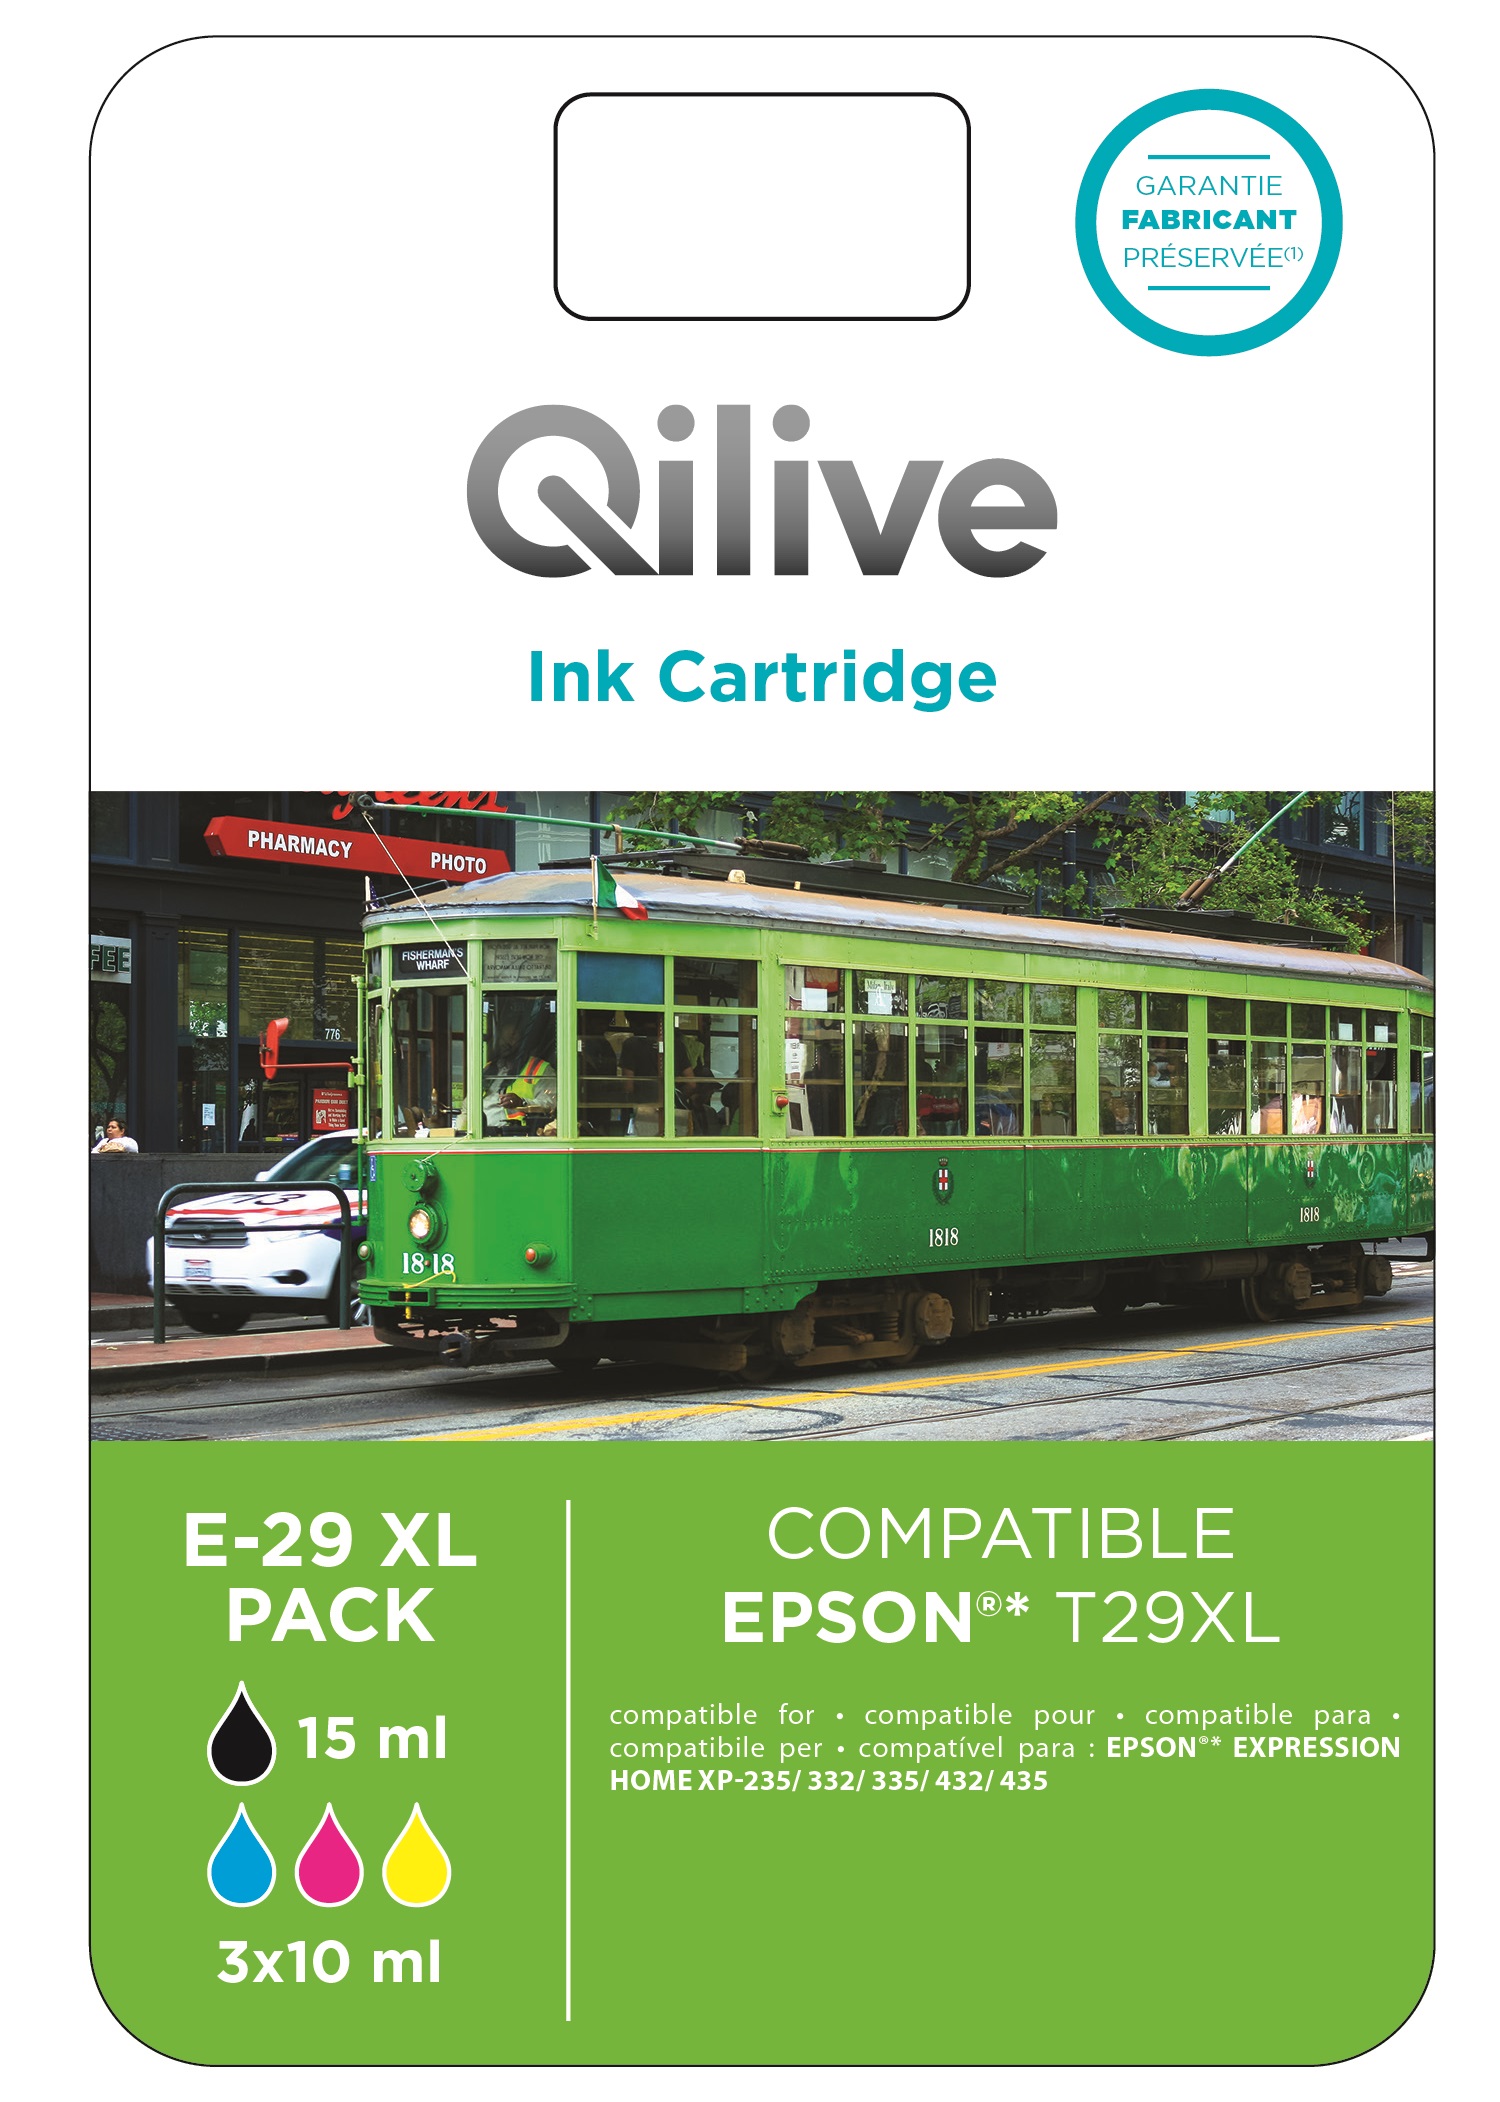 QILIVE Cartouche imprimante E-603 XL Pack 4 couleurs pas cher